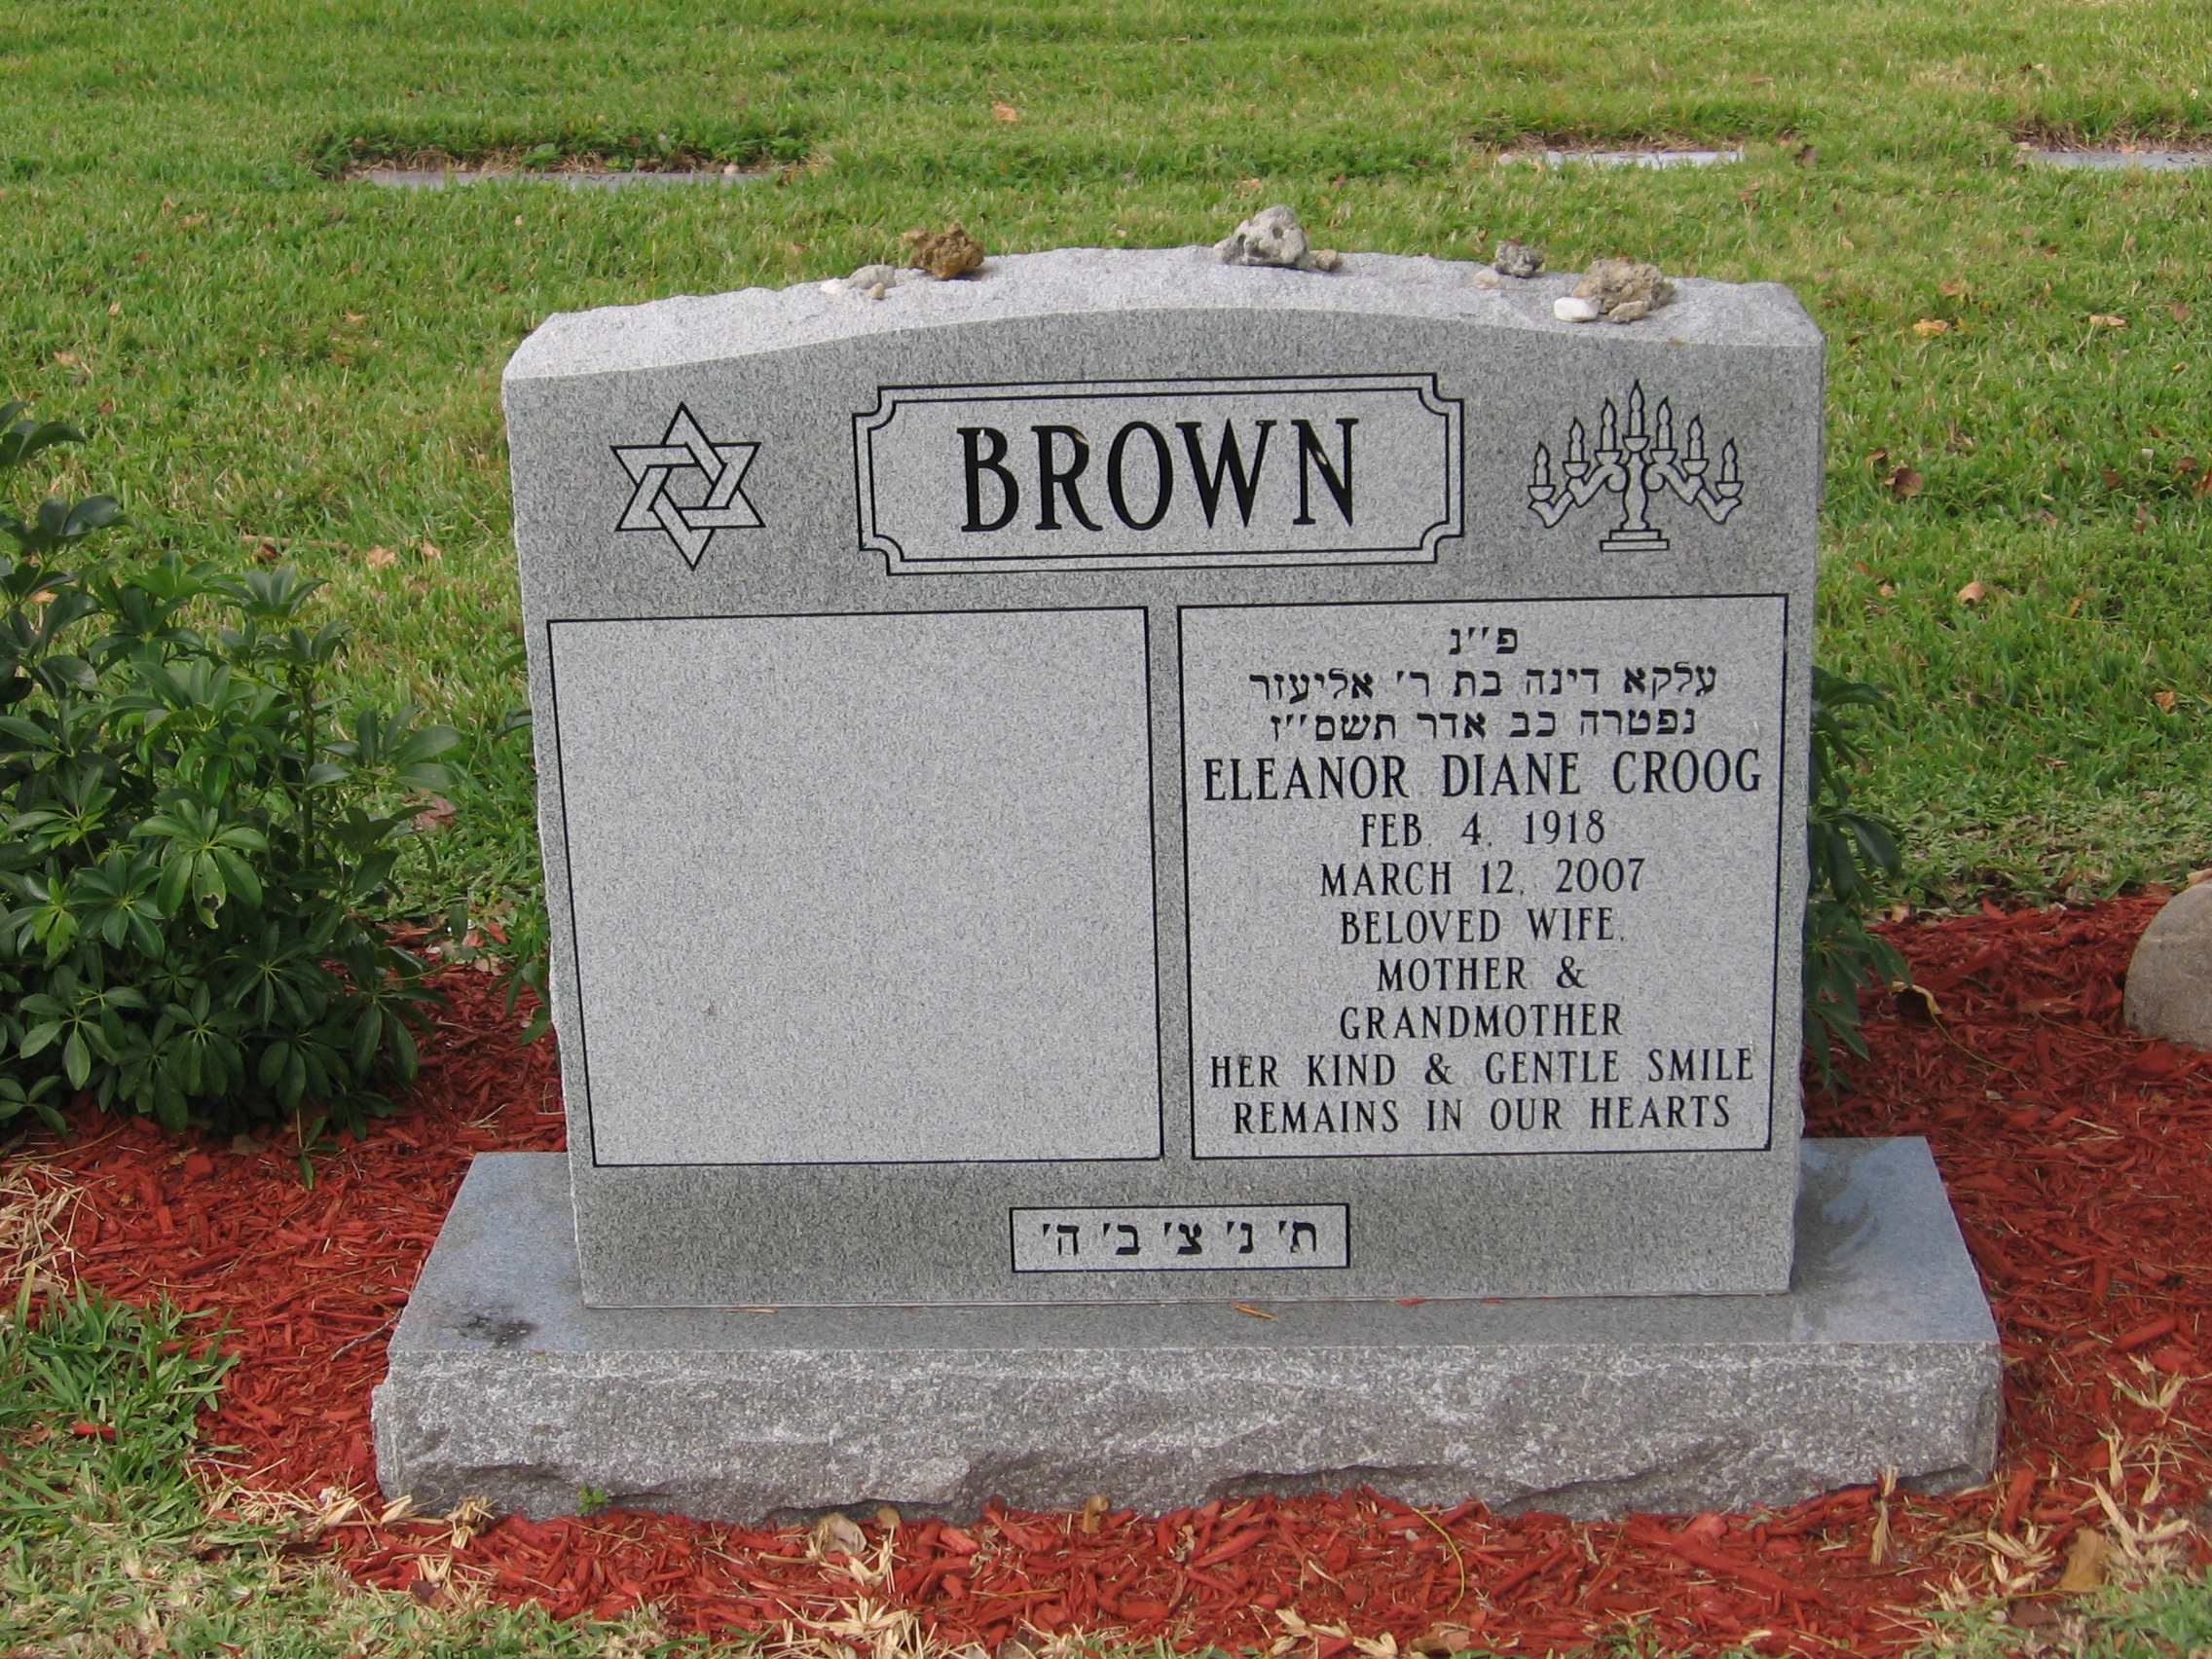 Eleanor Diane Croog Brown